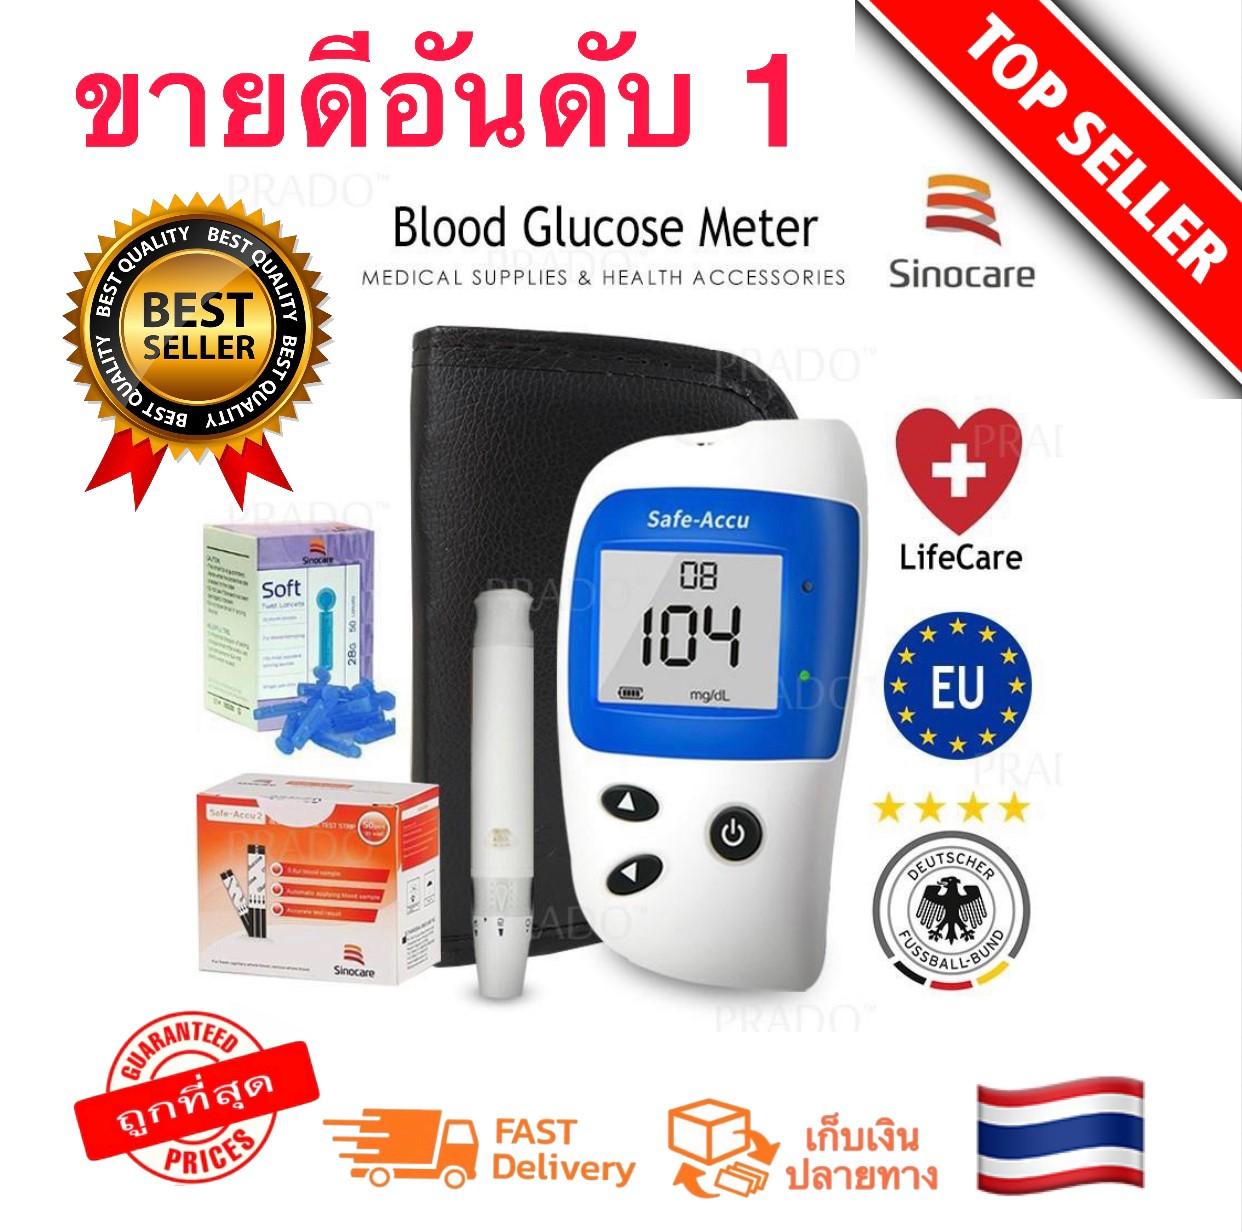 รุ่น Safe-Accu2 เครื่องวัดน้ำตาล ฺBlood glucose meterครัวเรือนเครื่องวัดน้ำตาลในเลือดอัตโนมัติเครื่องวัดน้ำตาลกลูโคสในเลือดสูงเครื่องมือวัด